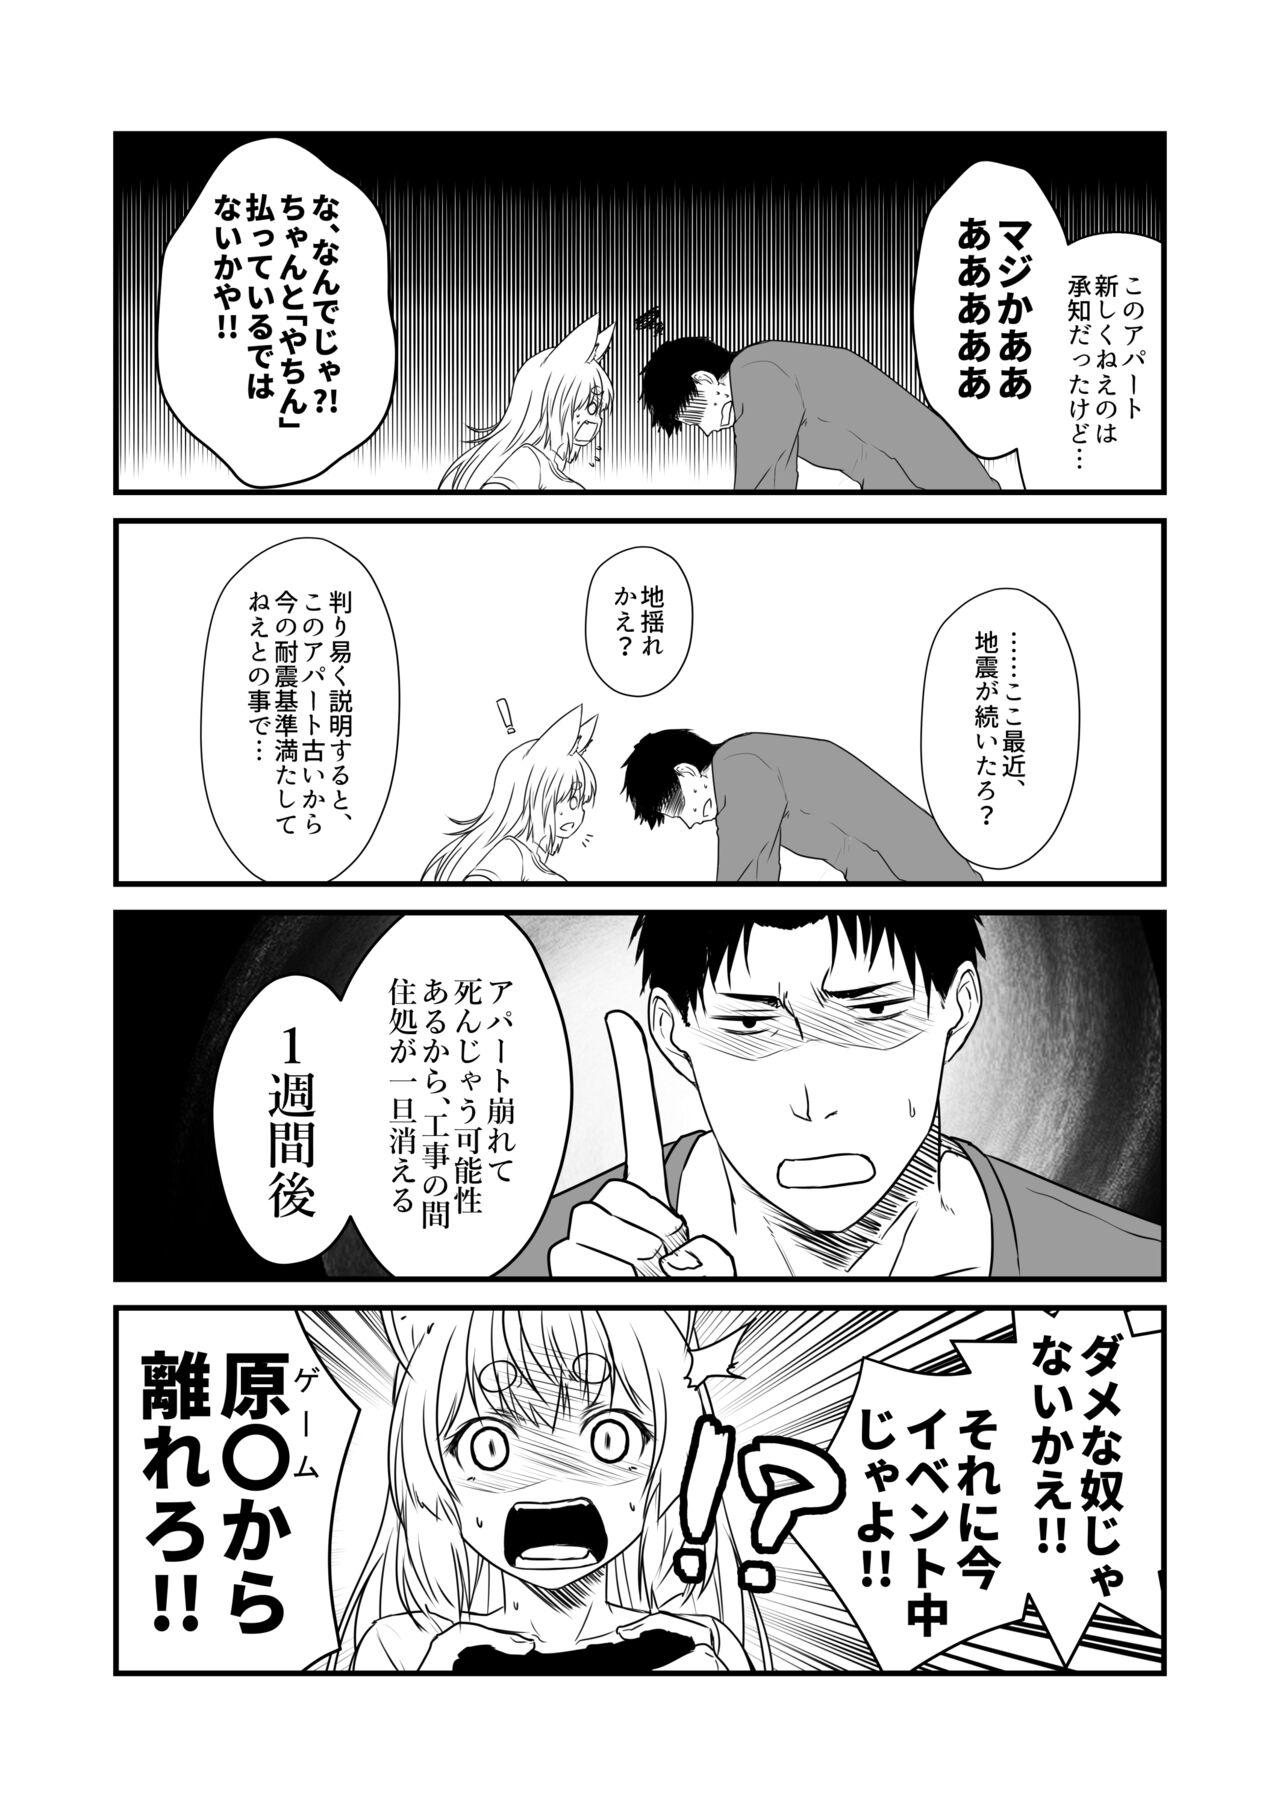 No Condom Kohaku Biyori Vol. 8 - Original Sharing - Page 5